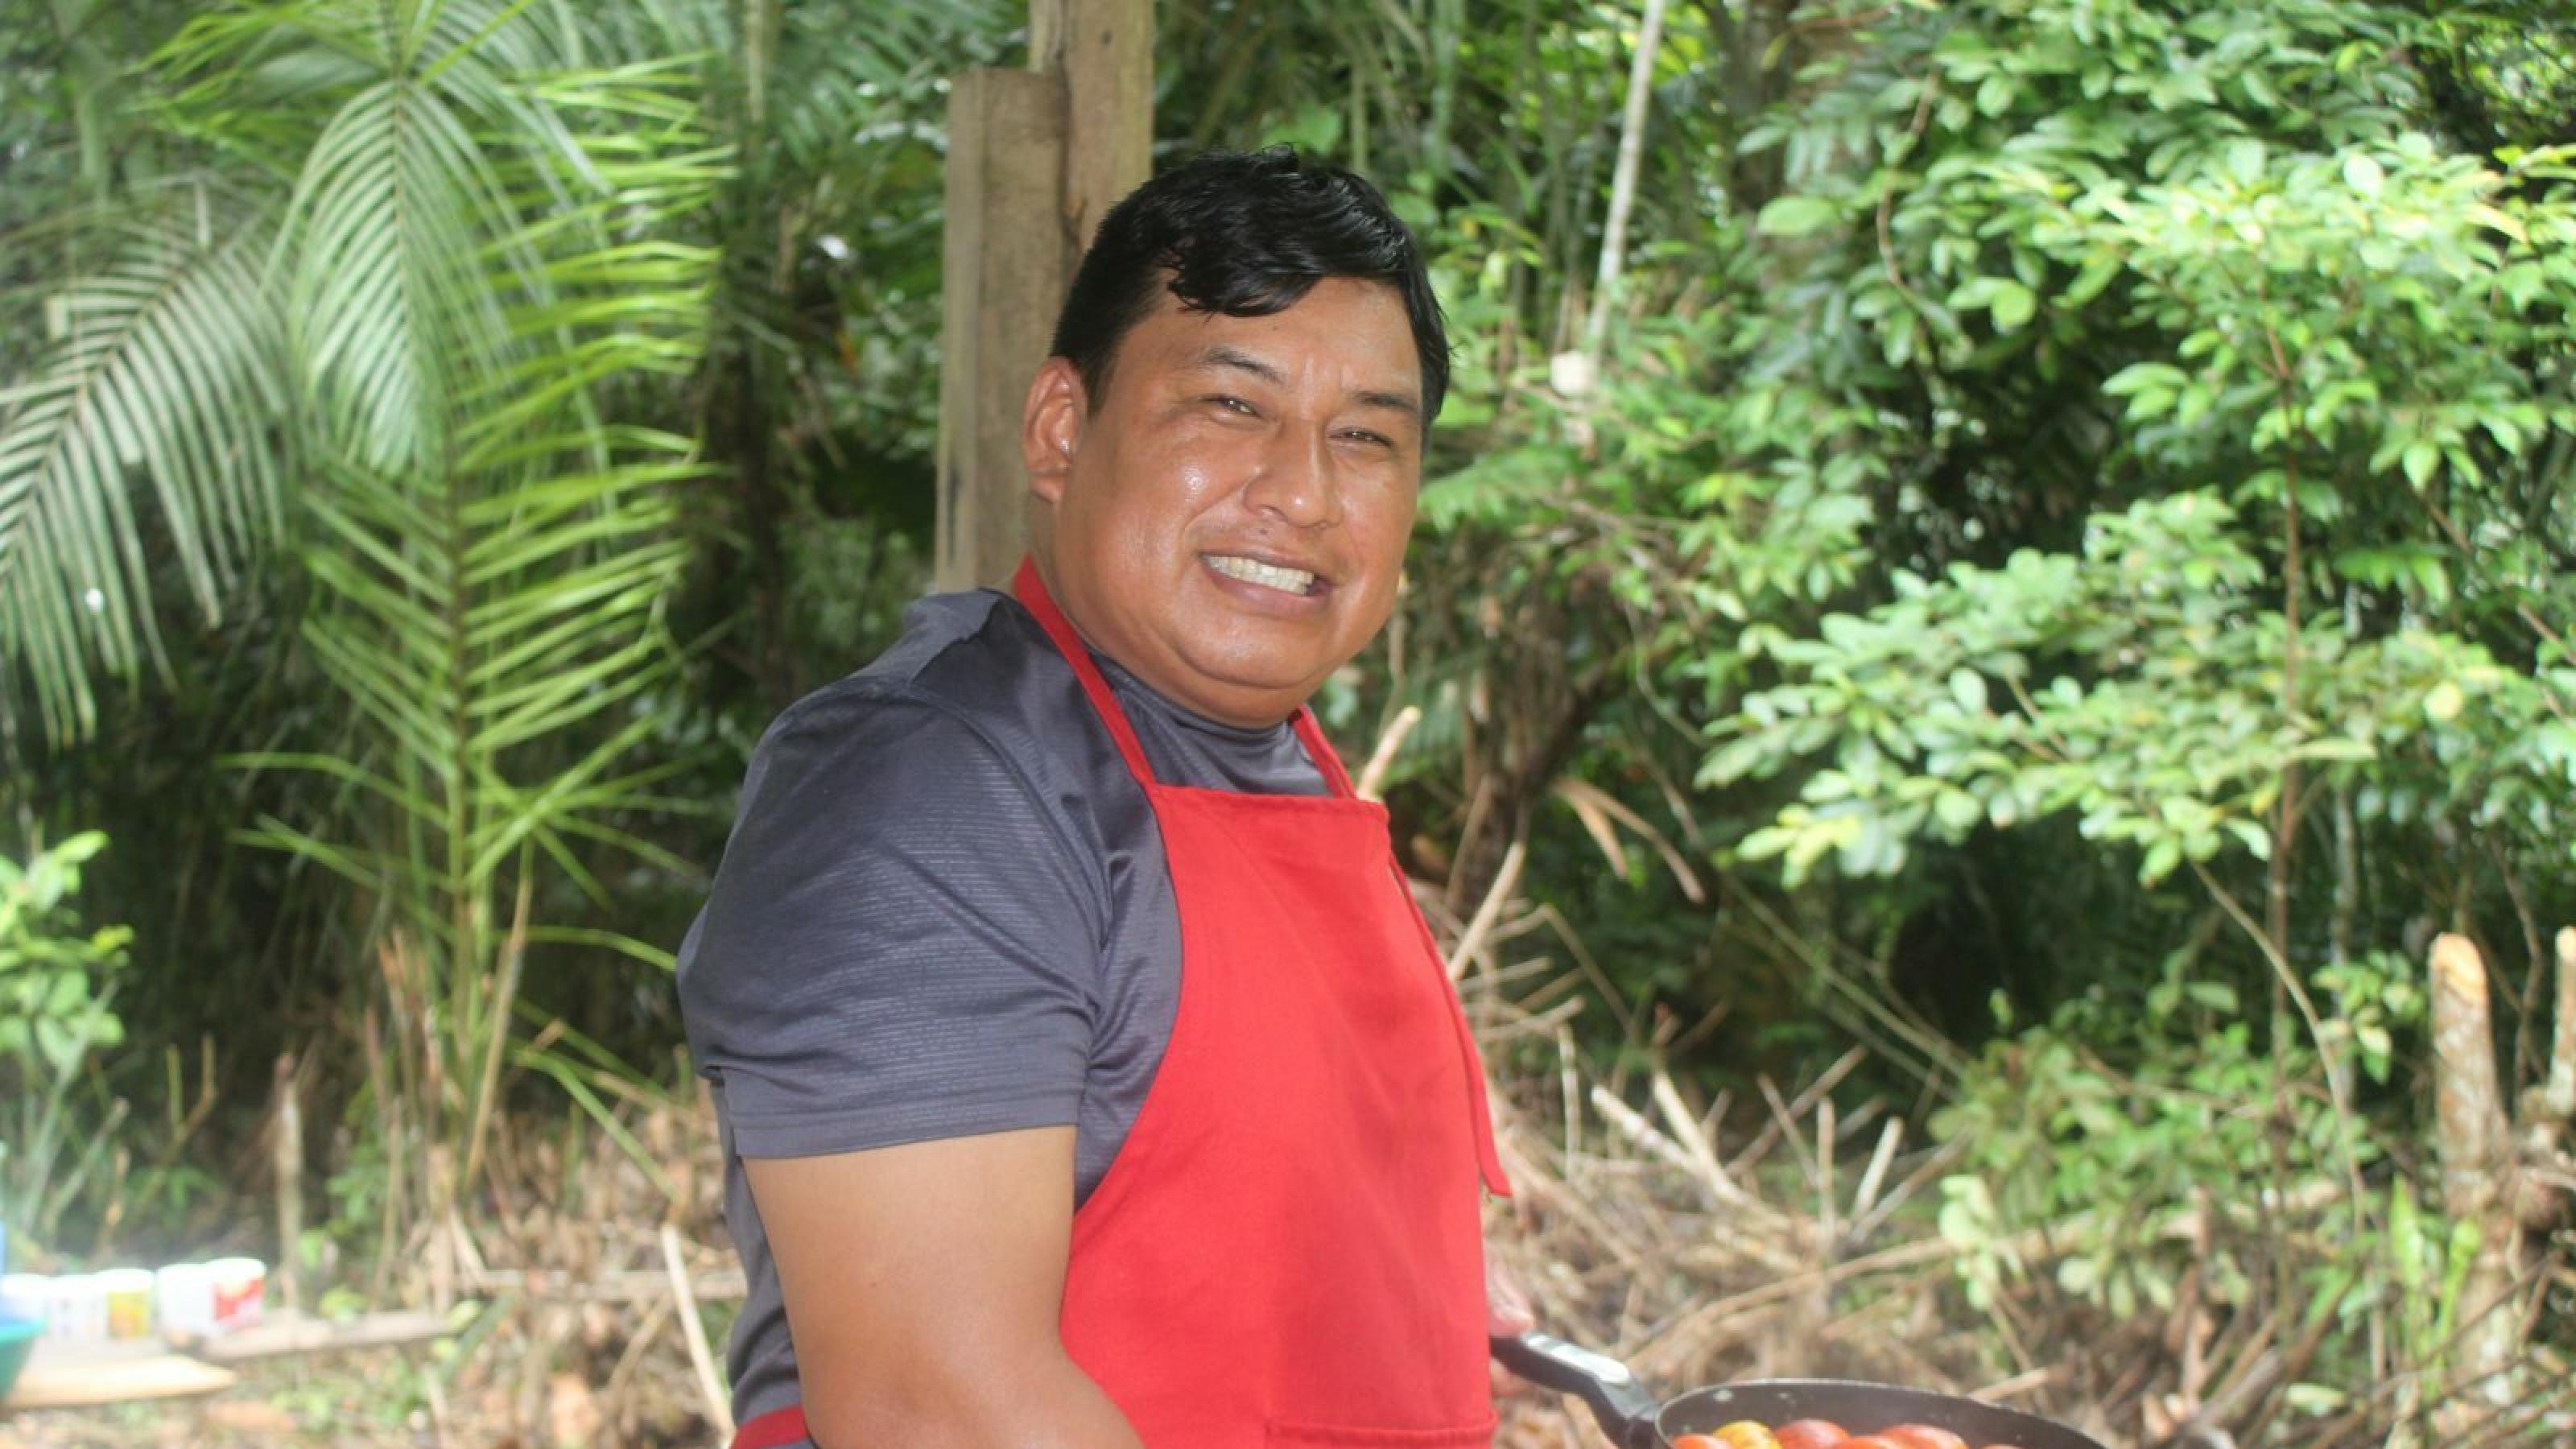 Mann, Ende dreißig, dunkle Haare, braunes Gesicht, trägt eine rote Schürze und hält eine Pfanne mit roten Früchten in der Hand. Im Hintergrund Regenwald.